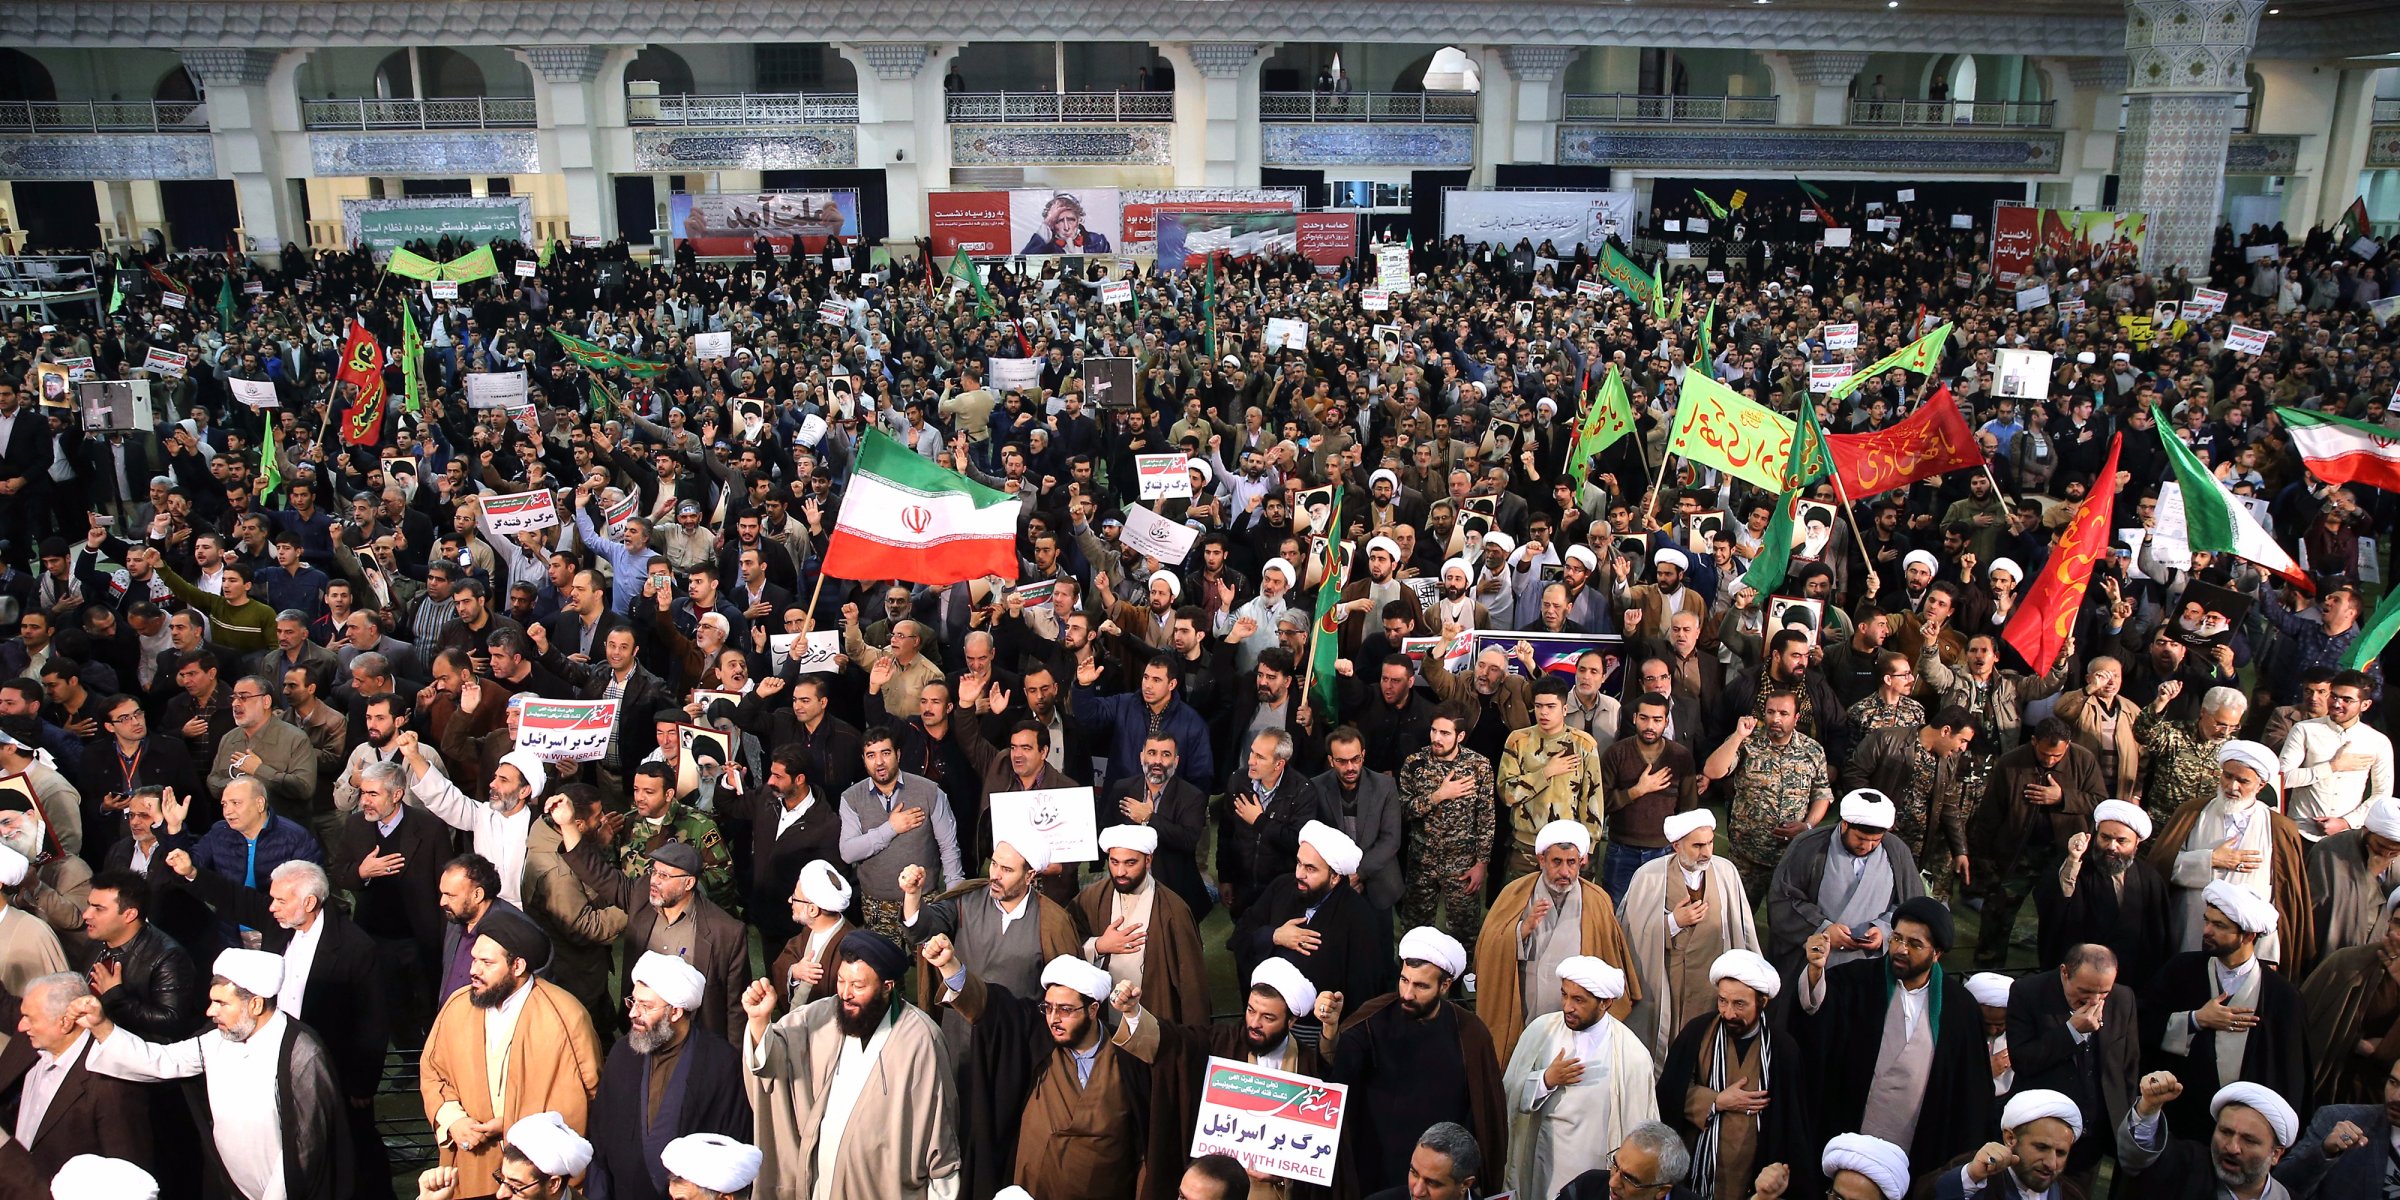 صورة إيران تعترف رسميا بمقتل 12 أشخاص في الاحتجاجات التي تعم البلاد